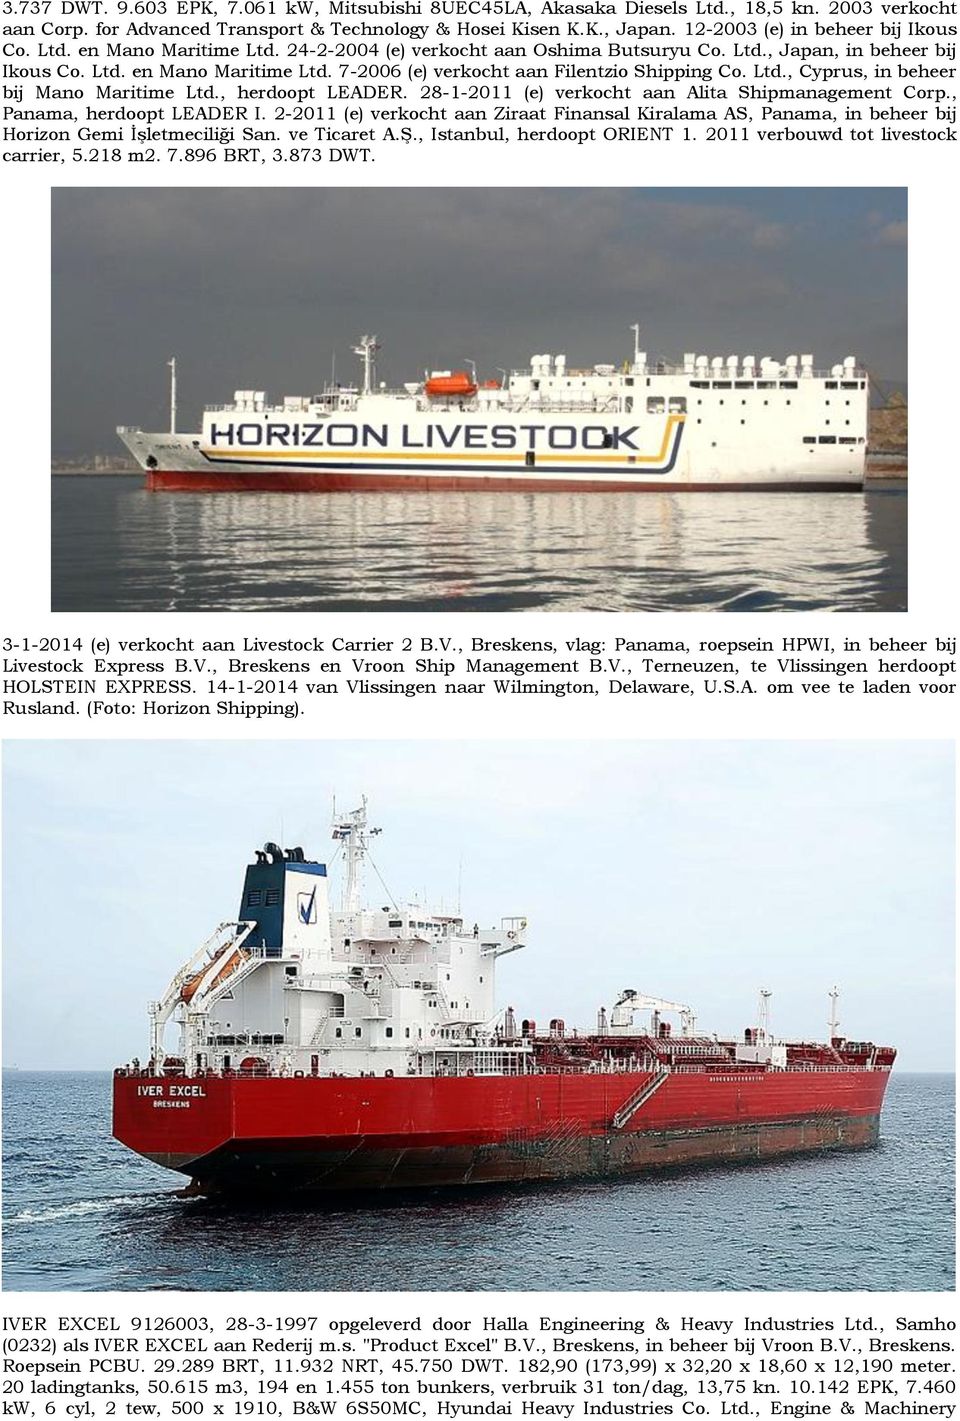 Ltd., Cyprus, in beheer bij Mano Maritime Ltd., herdoopt LEADER. 28-1-2011 (e) verkocht aan Alita Shipmanagement Corp., Panama, herdoopt LEADER I.